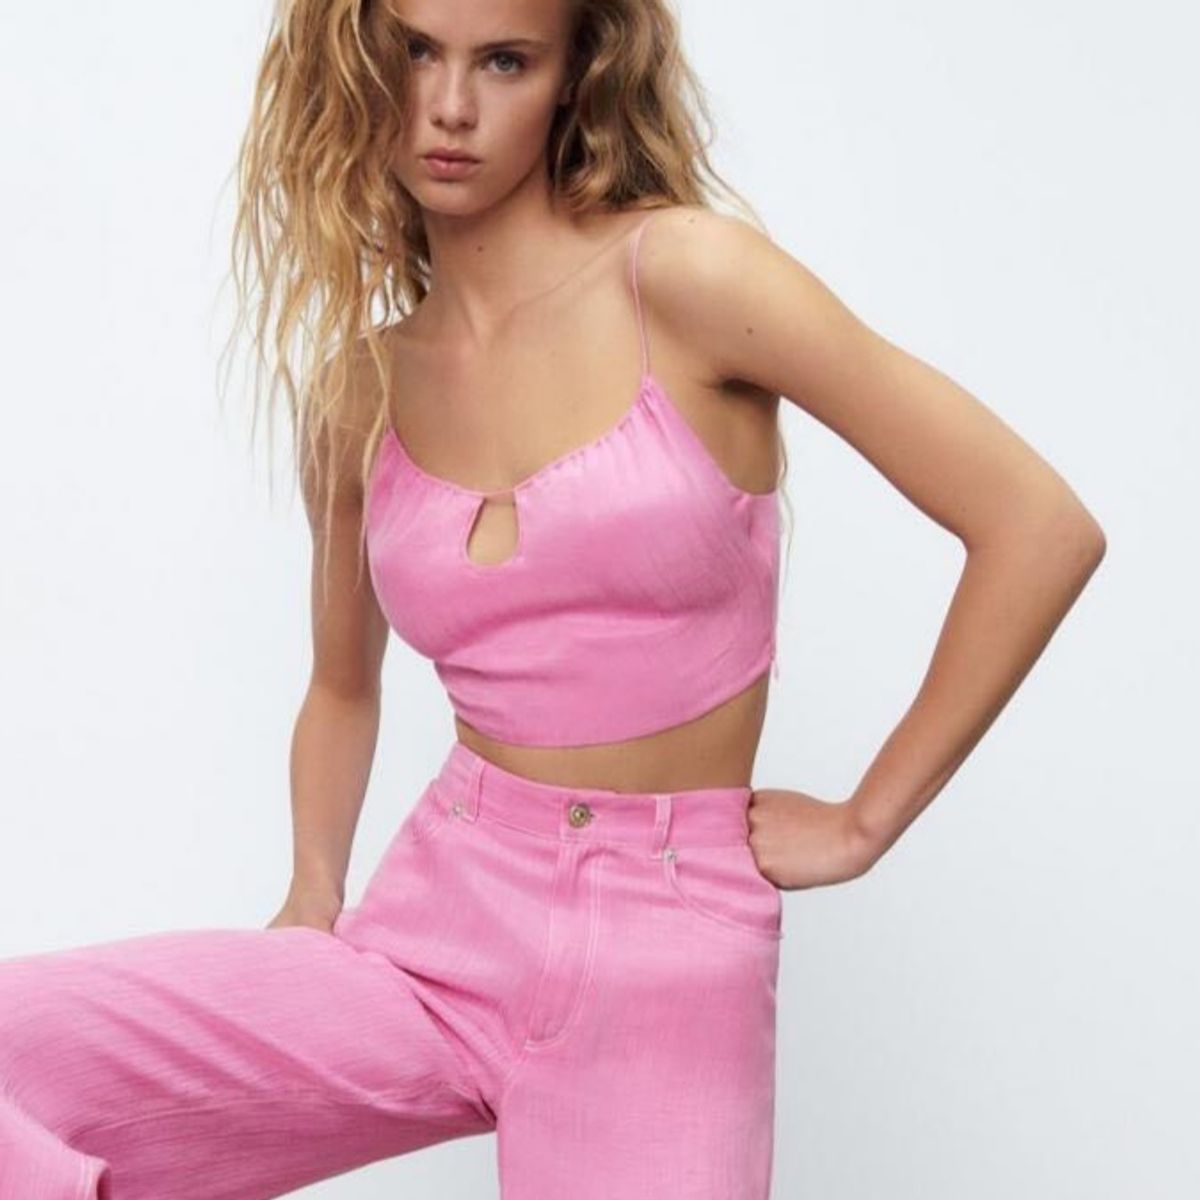 Cansada de roupas cor de rosa, garota resolve ser modelo da Zara